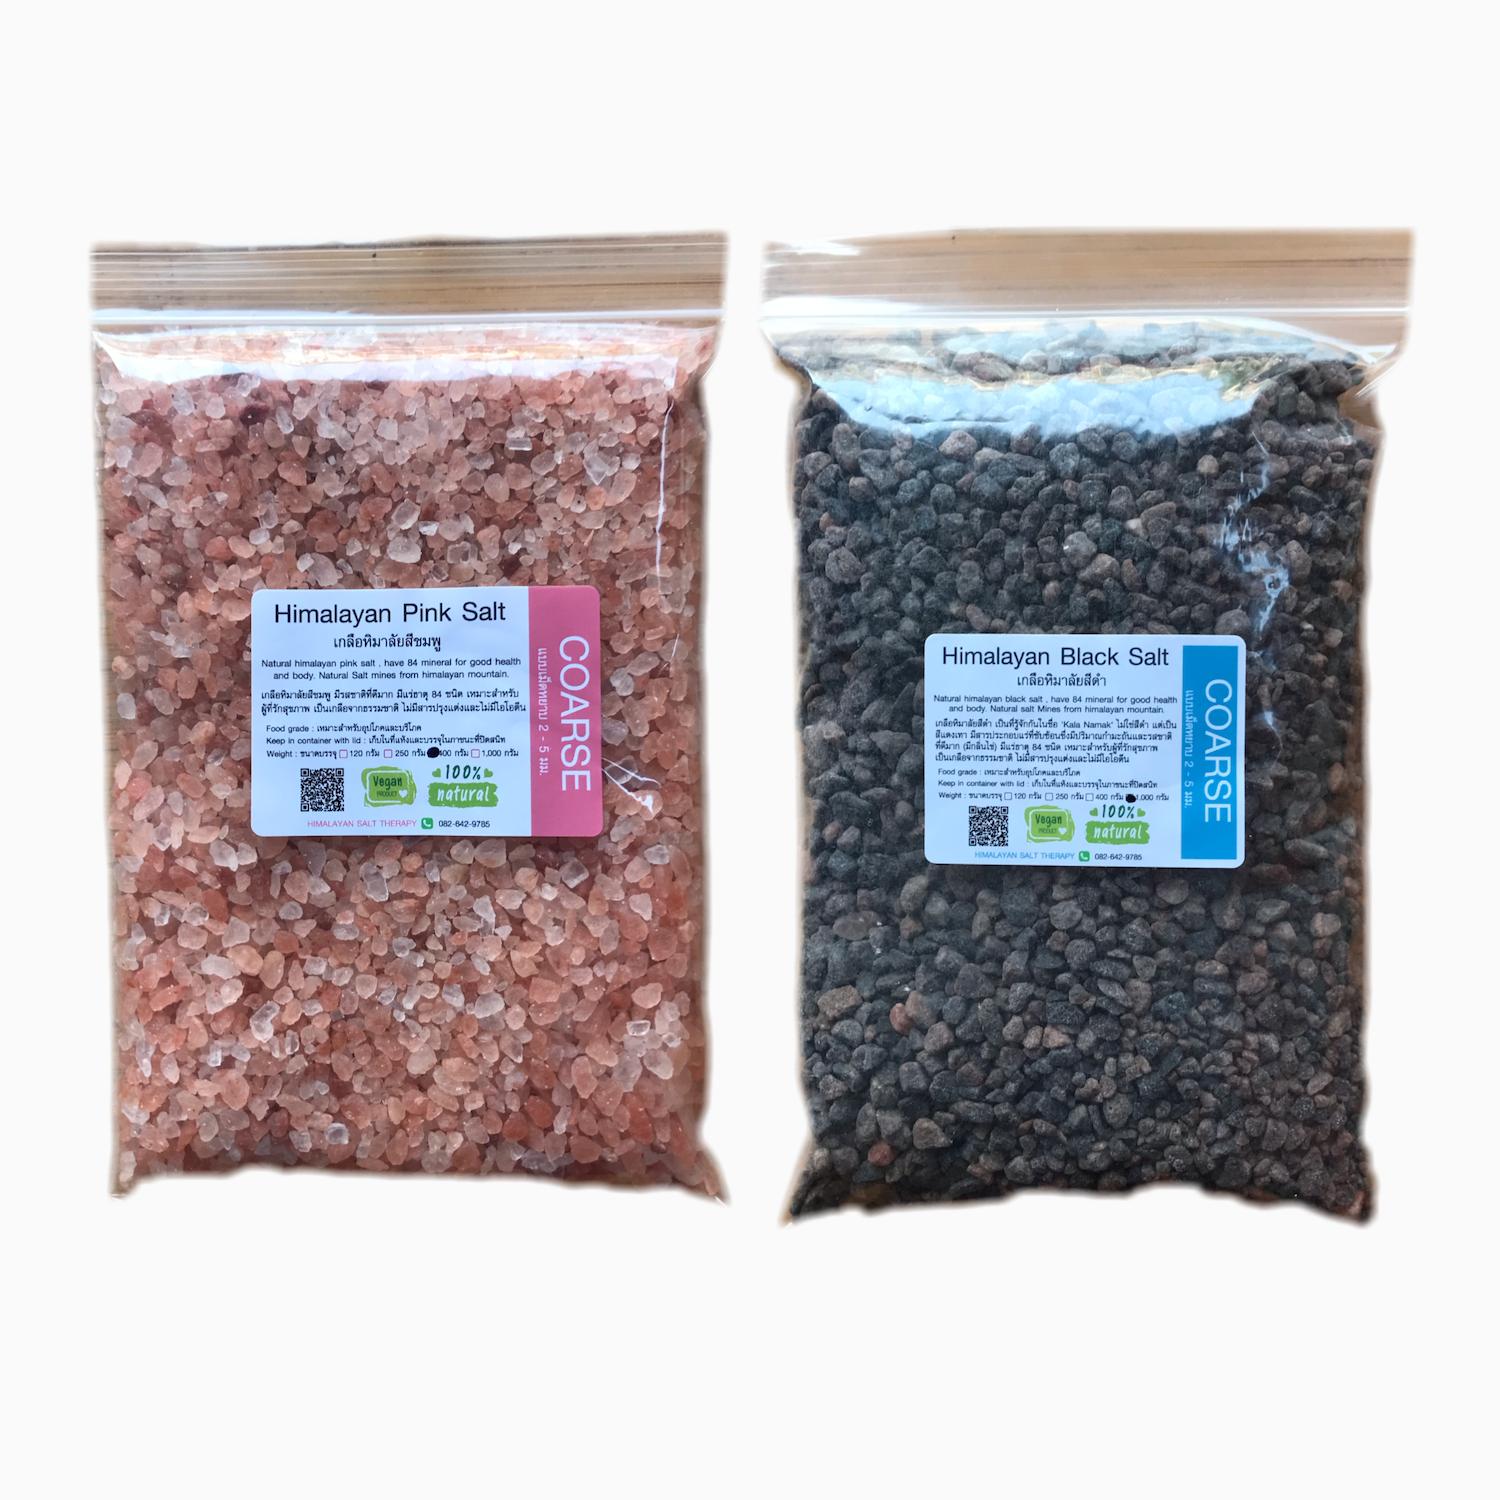 เกลือหิมาลายันสีชมพูและสีดำ แพ็็คคู่ใหม่ เกรดอาหาร กาลา นามัค แบบเม็ดหยาบ ขนาดบรรจุ 400 กรัม x ชนิดละ 1 แพ็ค Himalayan Salt PInk&Black Kala namak Coarse  Food grade 400 gram. x 1 pack each. จากเทือกเขาหิมาลัย เกลือชมพู เกลือดำ ไม้ร่ม คีโต